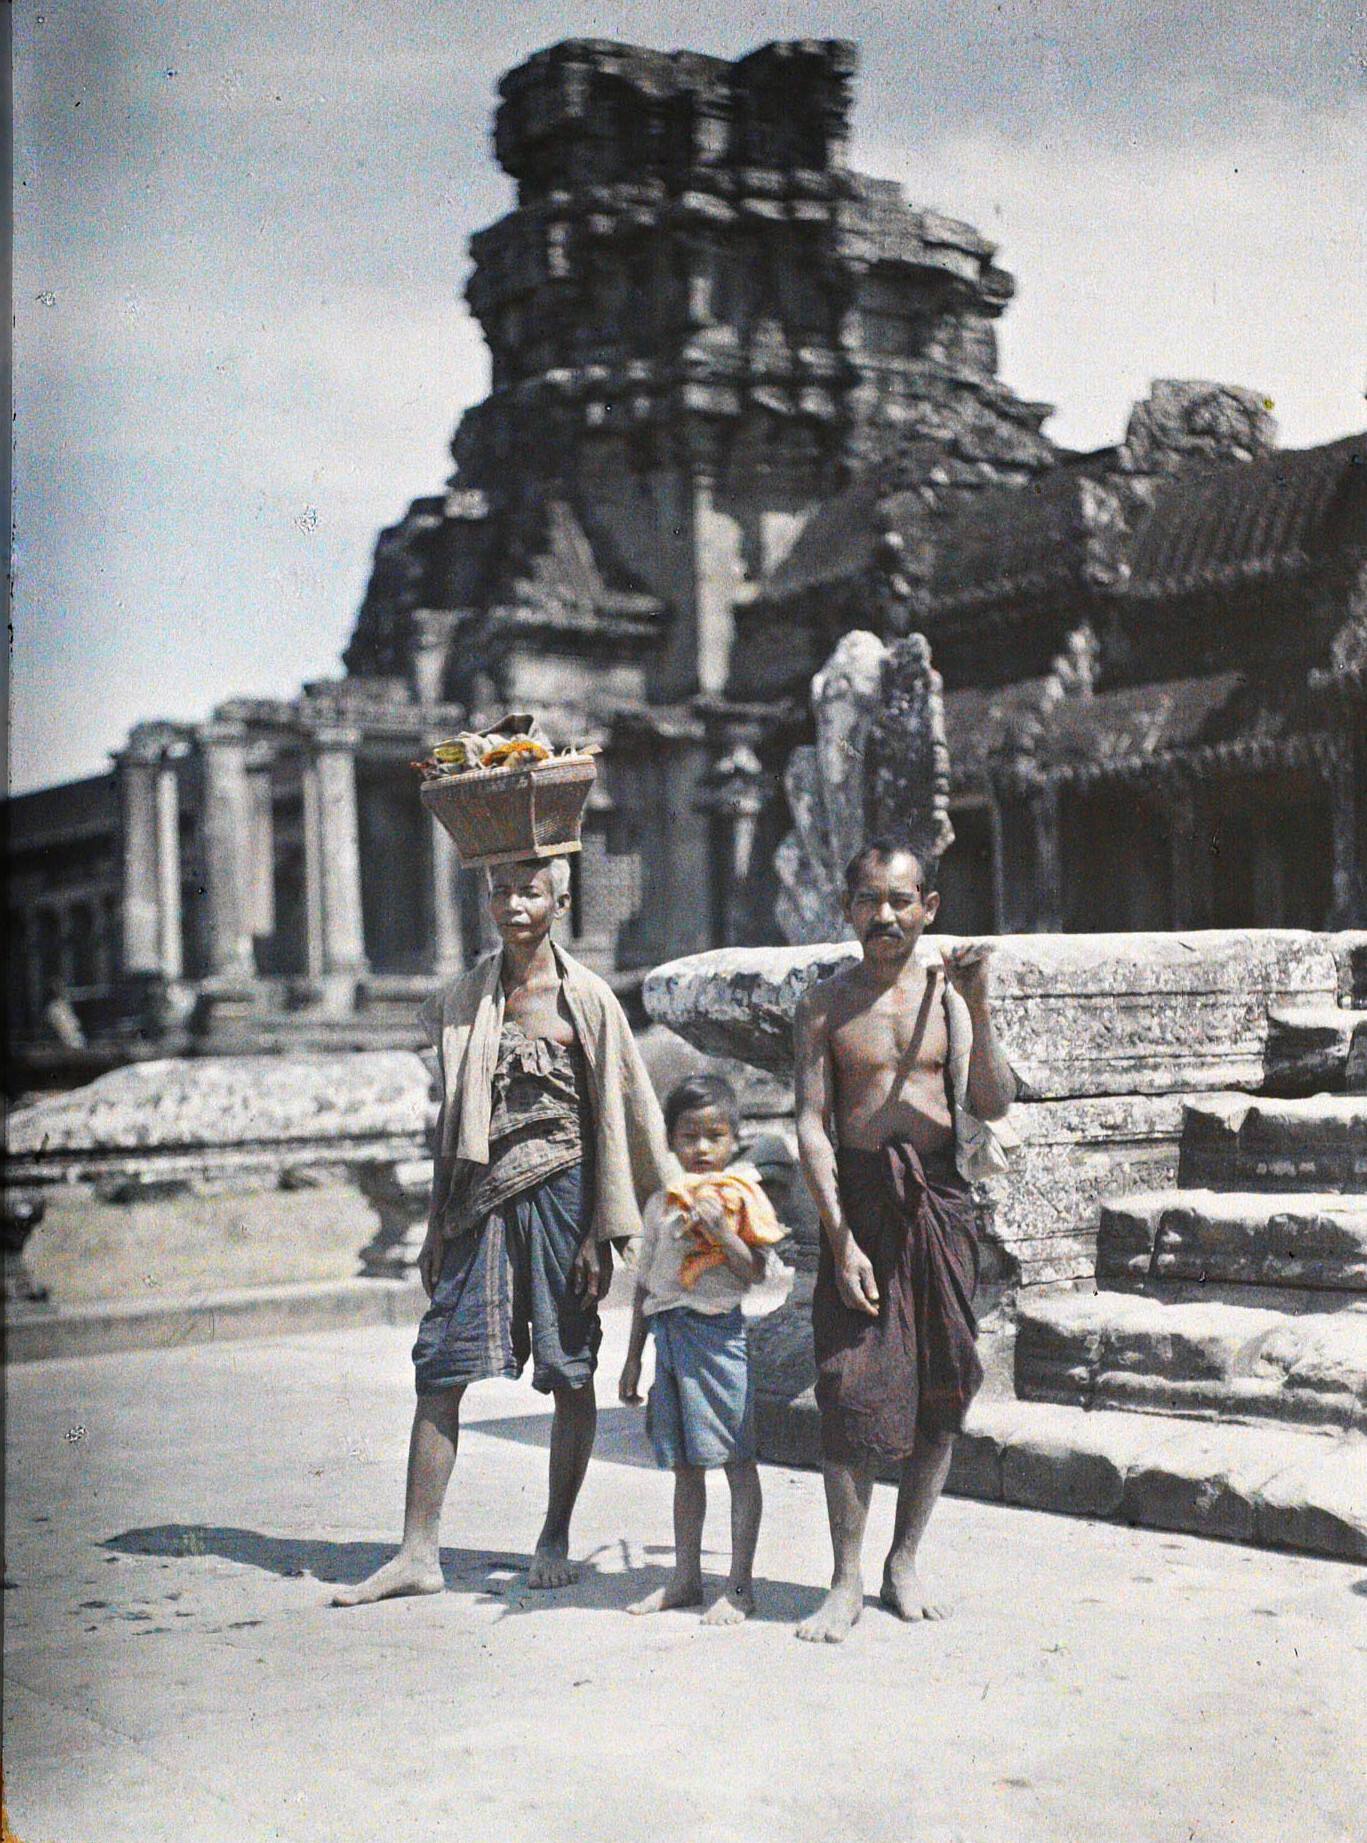 Ангкор, Камбоджа, Индокитай. Камбоджийская семья в путешествии, 1921 год, автор Леон Бизи (автохром)